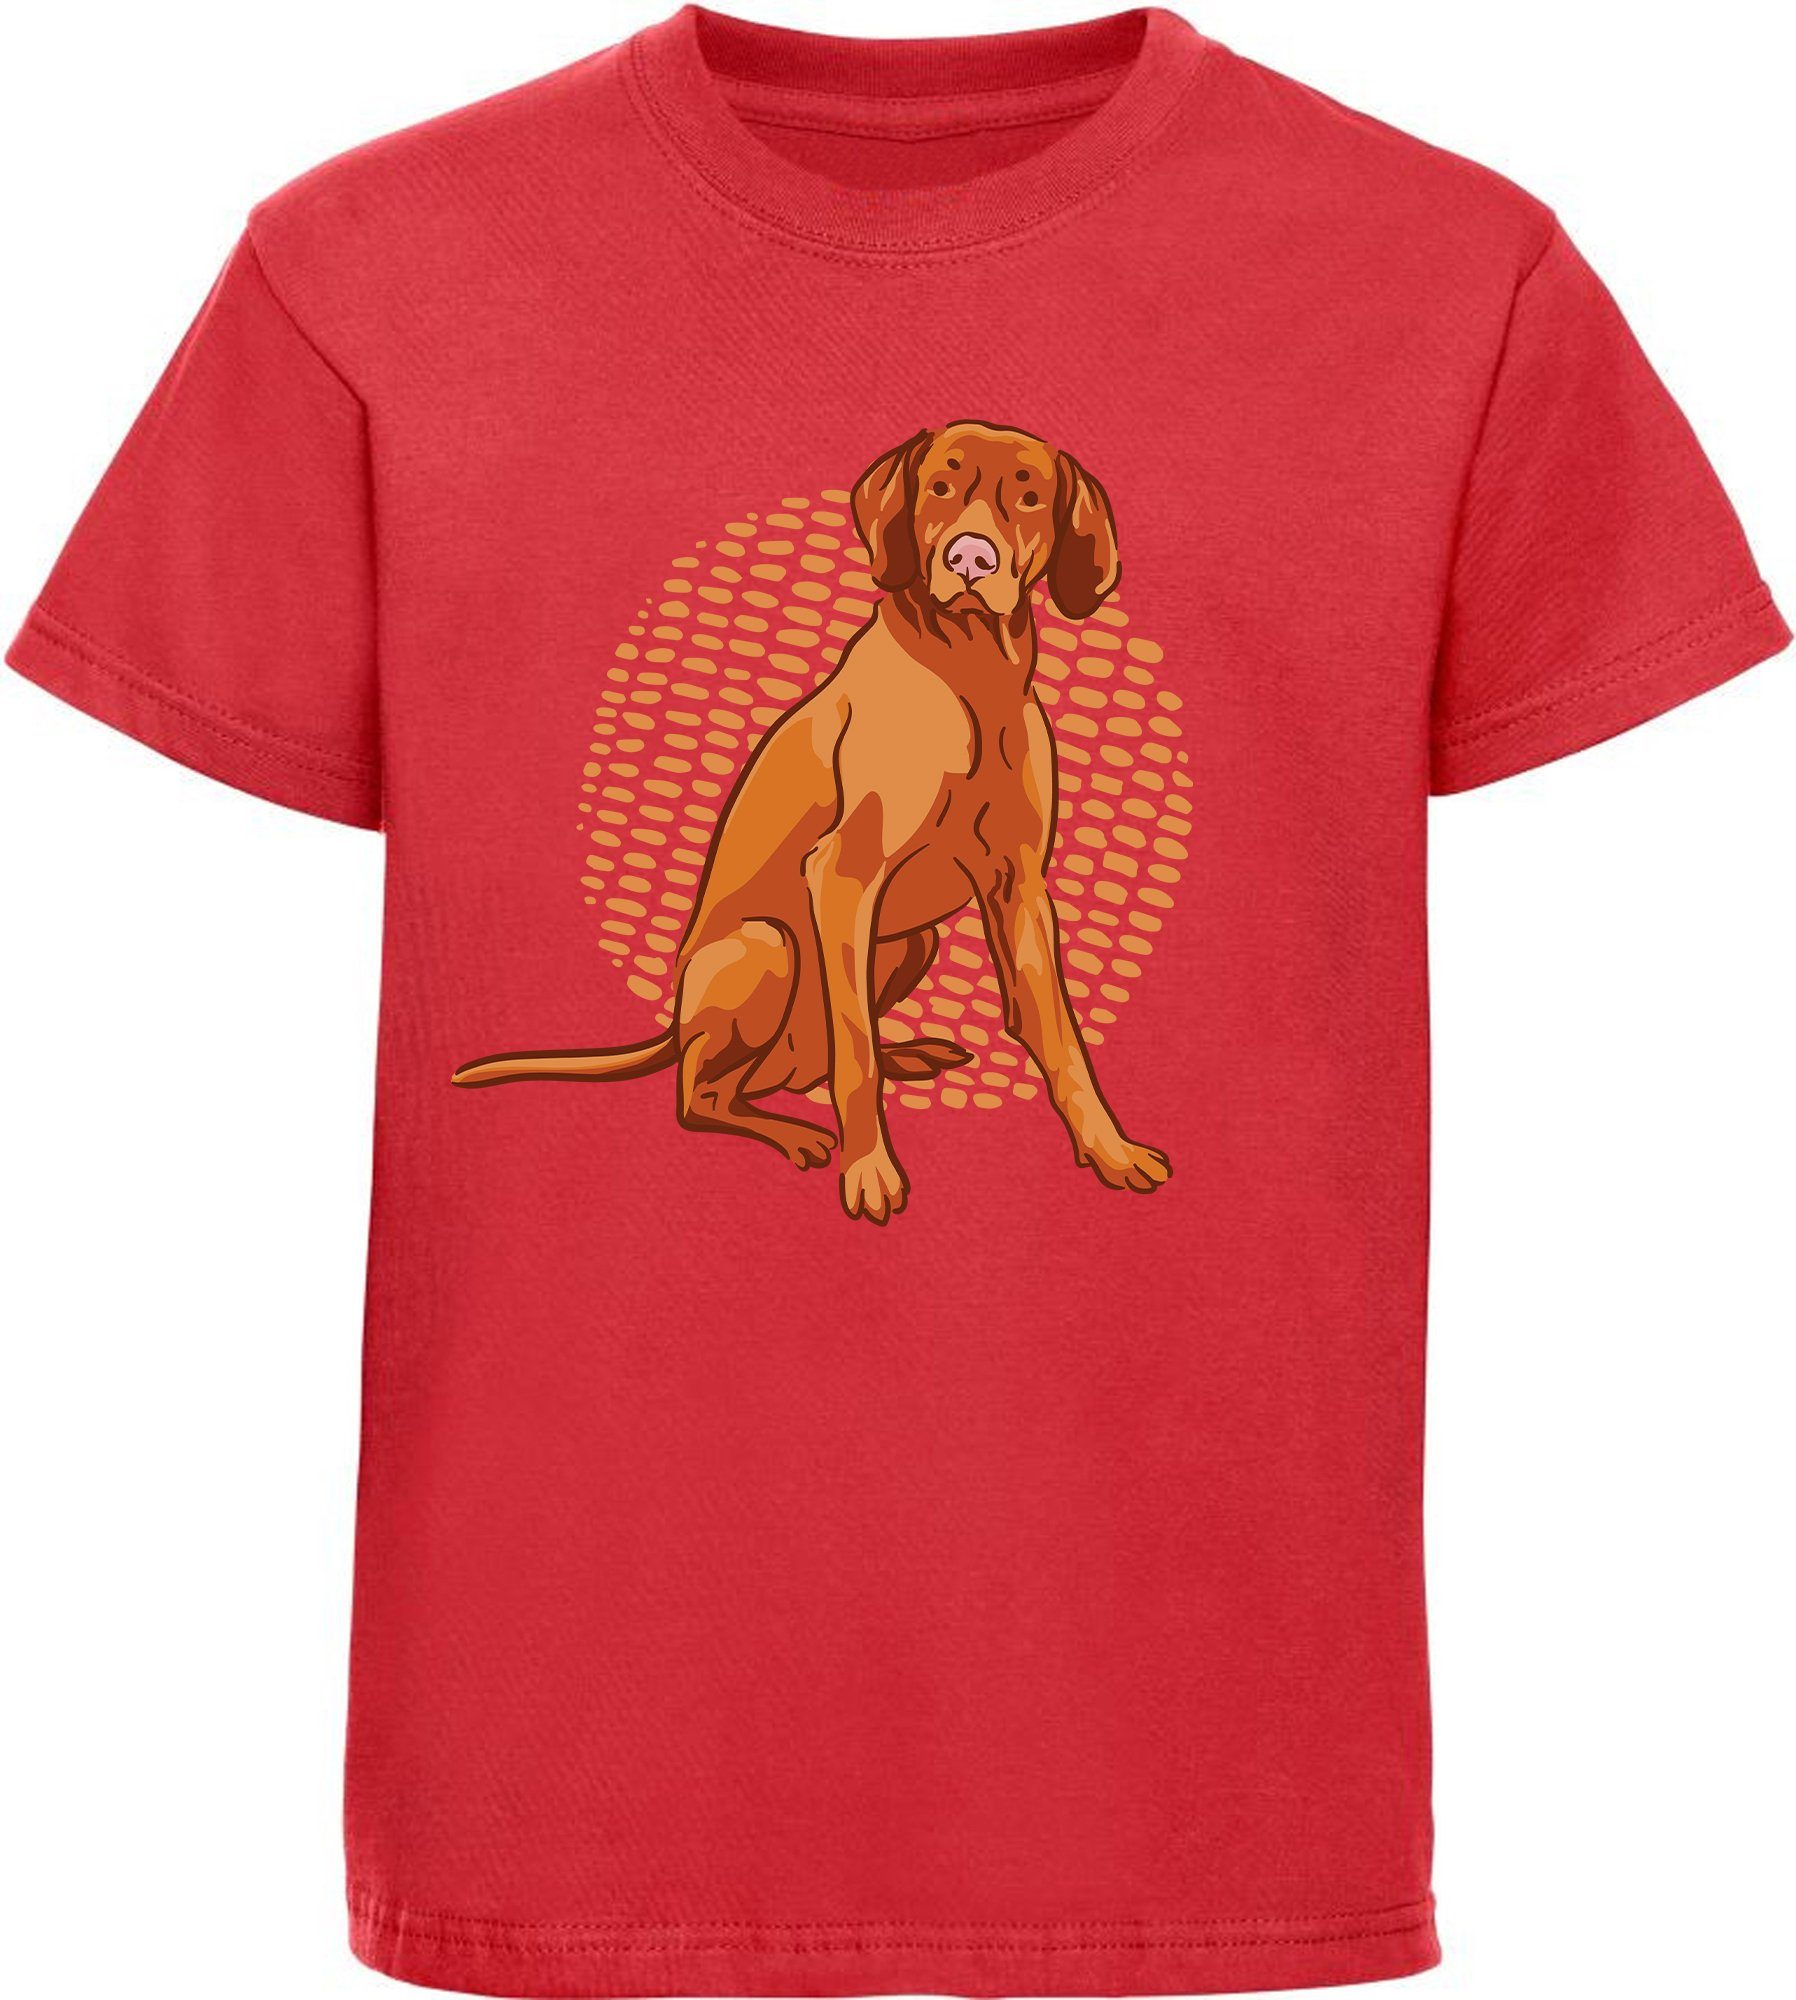 MyDesign24 T-Shirt Kinder Hunde bedruckt - brauner mit Baumwollshirt Print Aufdruck, i257 rot Hund Shirt Sitzender